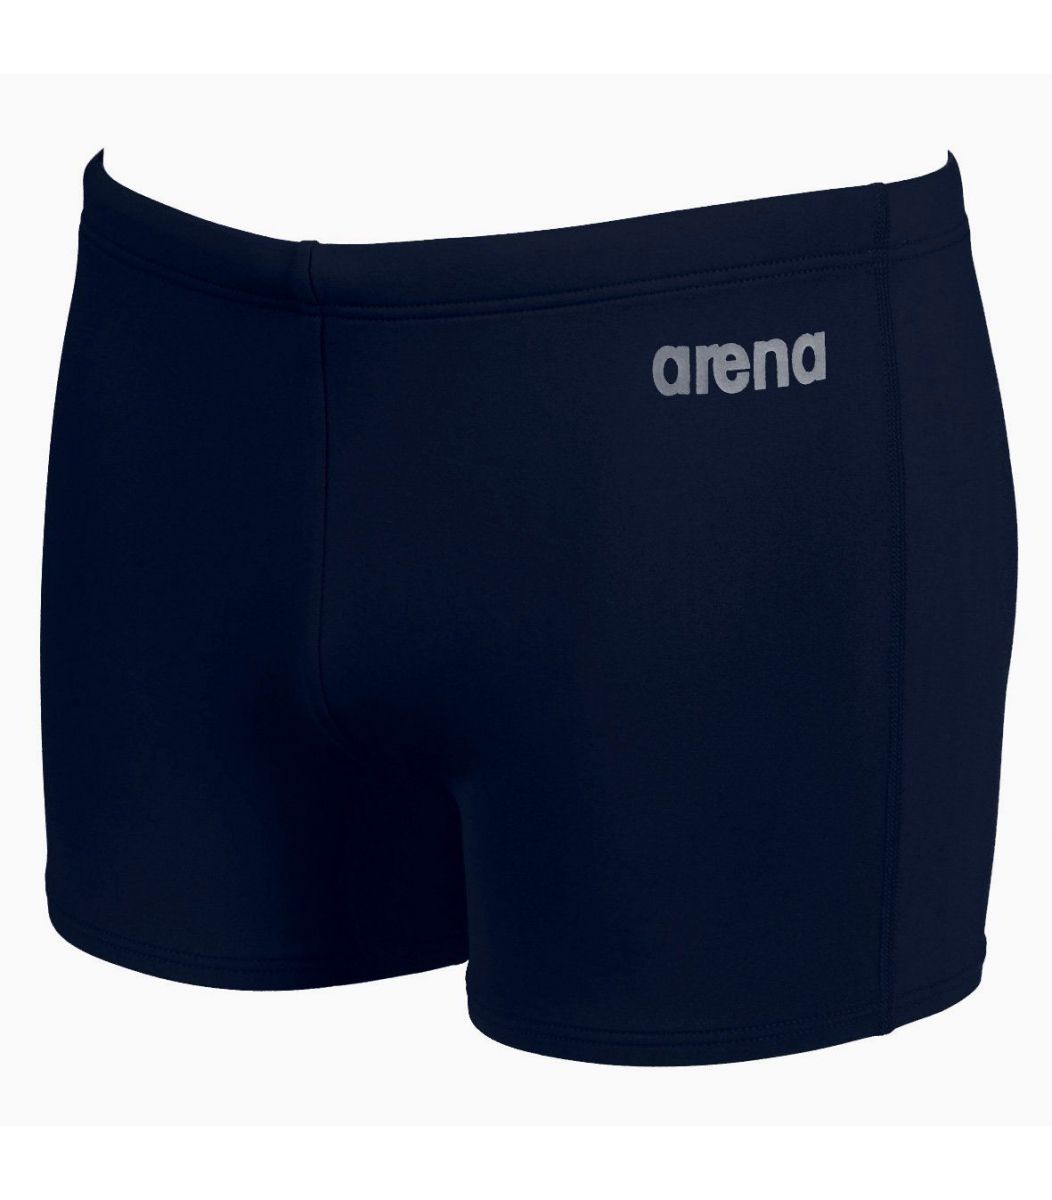  Μαγιό Arena Arena Boy Swimwear Bynarx Jr 2117975-1